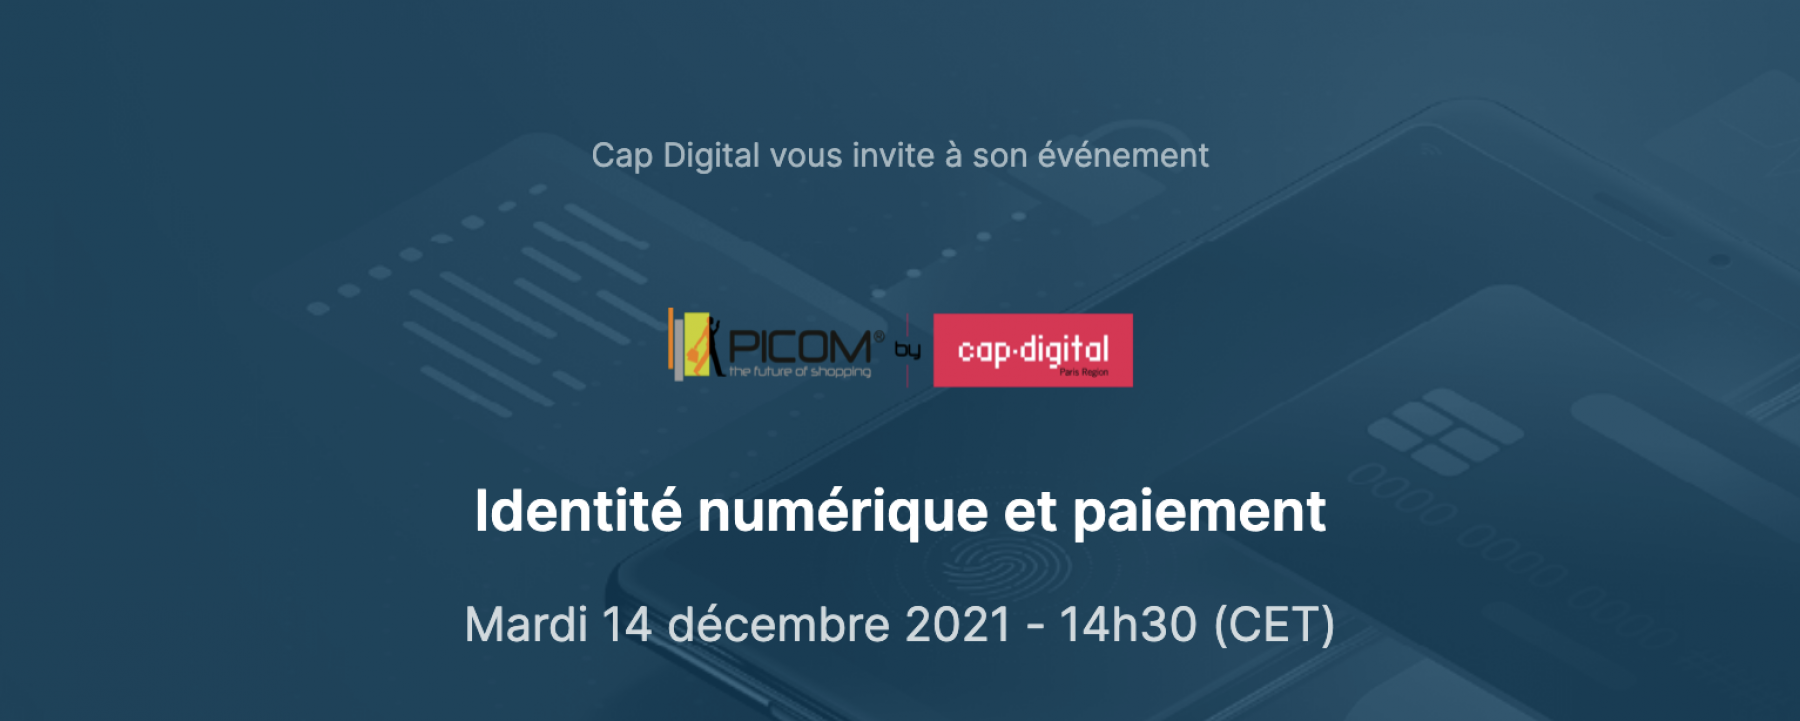 Identité numérique et paiement PICOM & Cap Digital le 14 décembre 2021